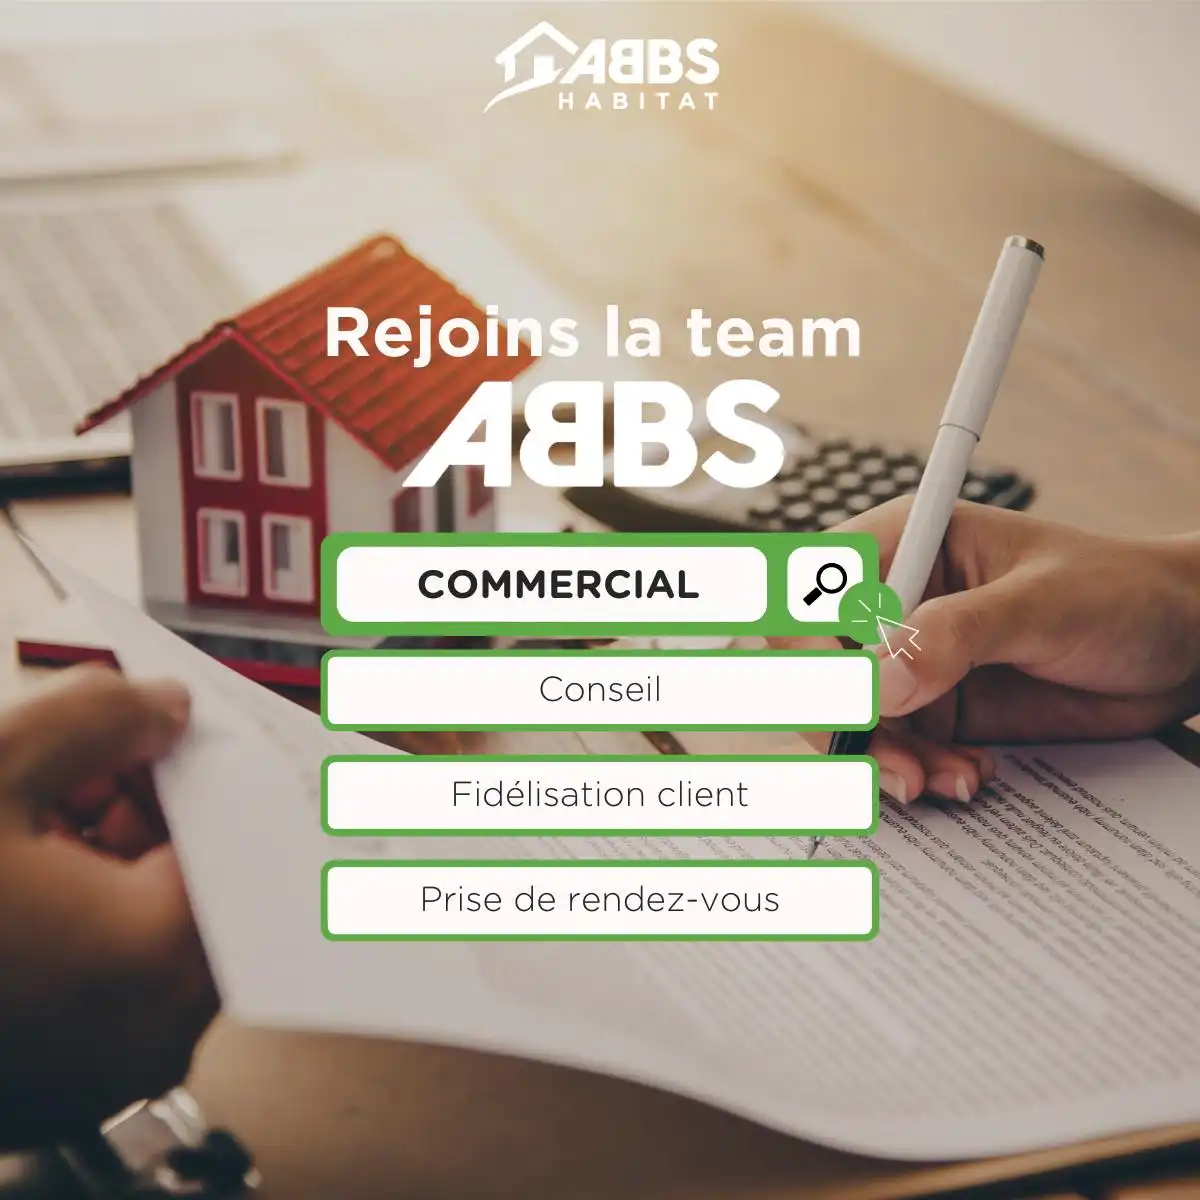 Rejoindre ABBS en tant que commercial